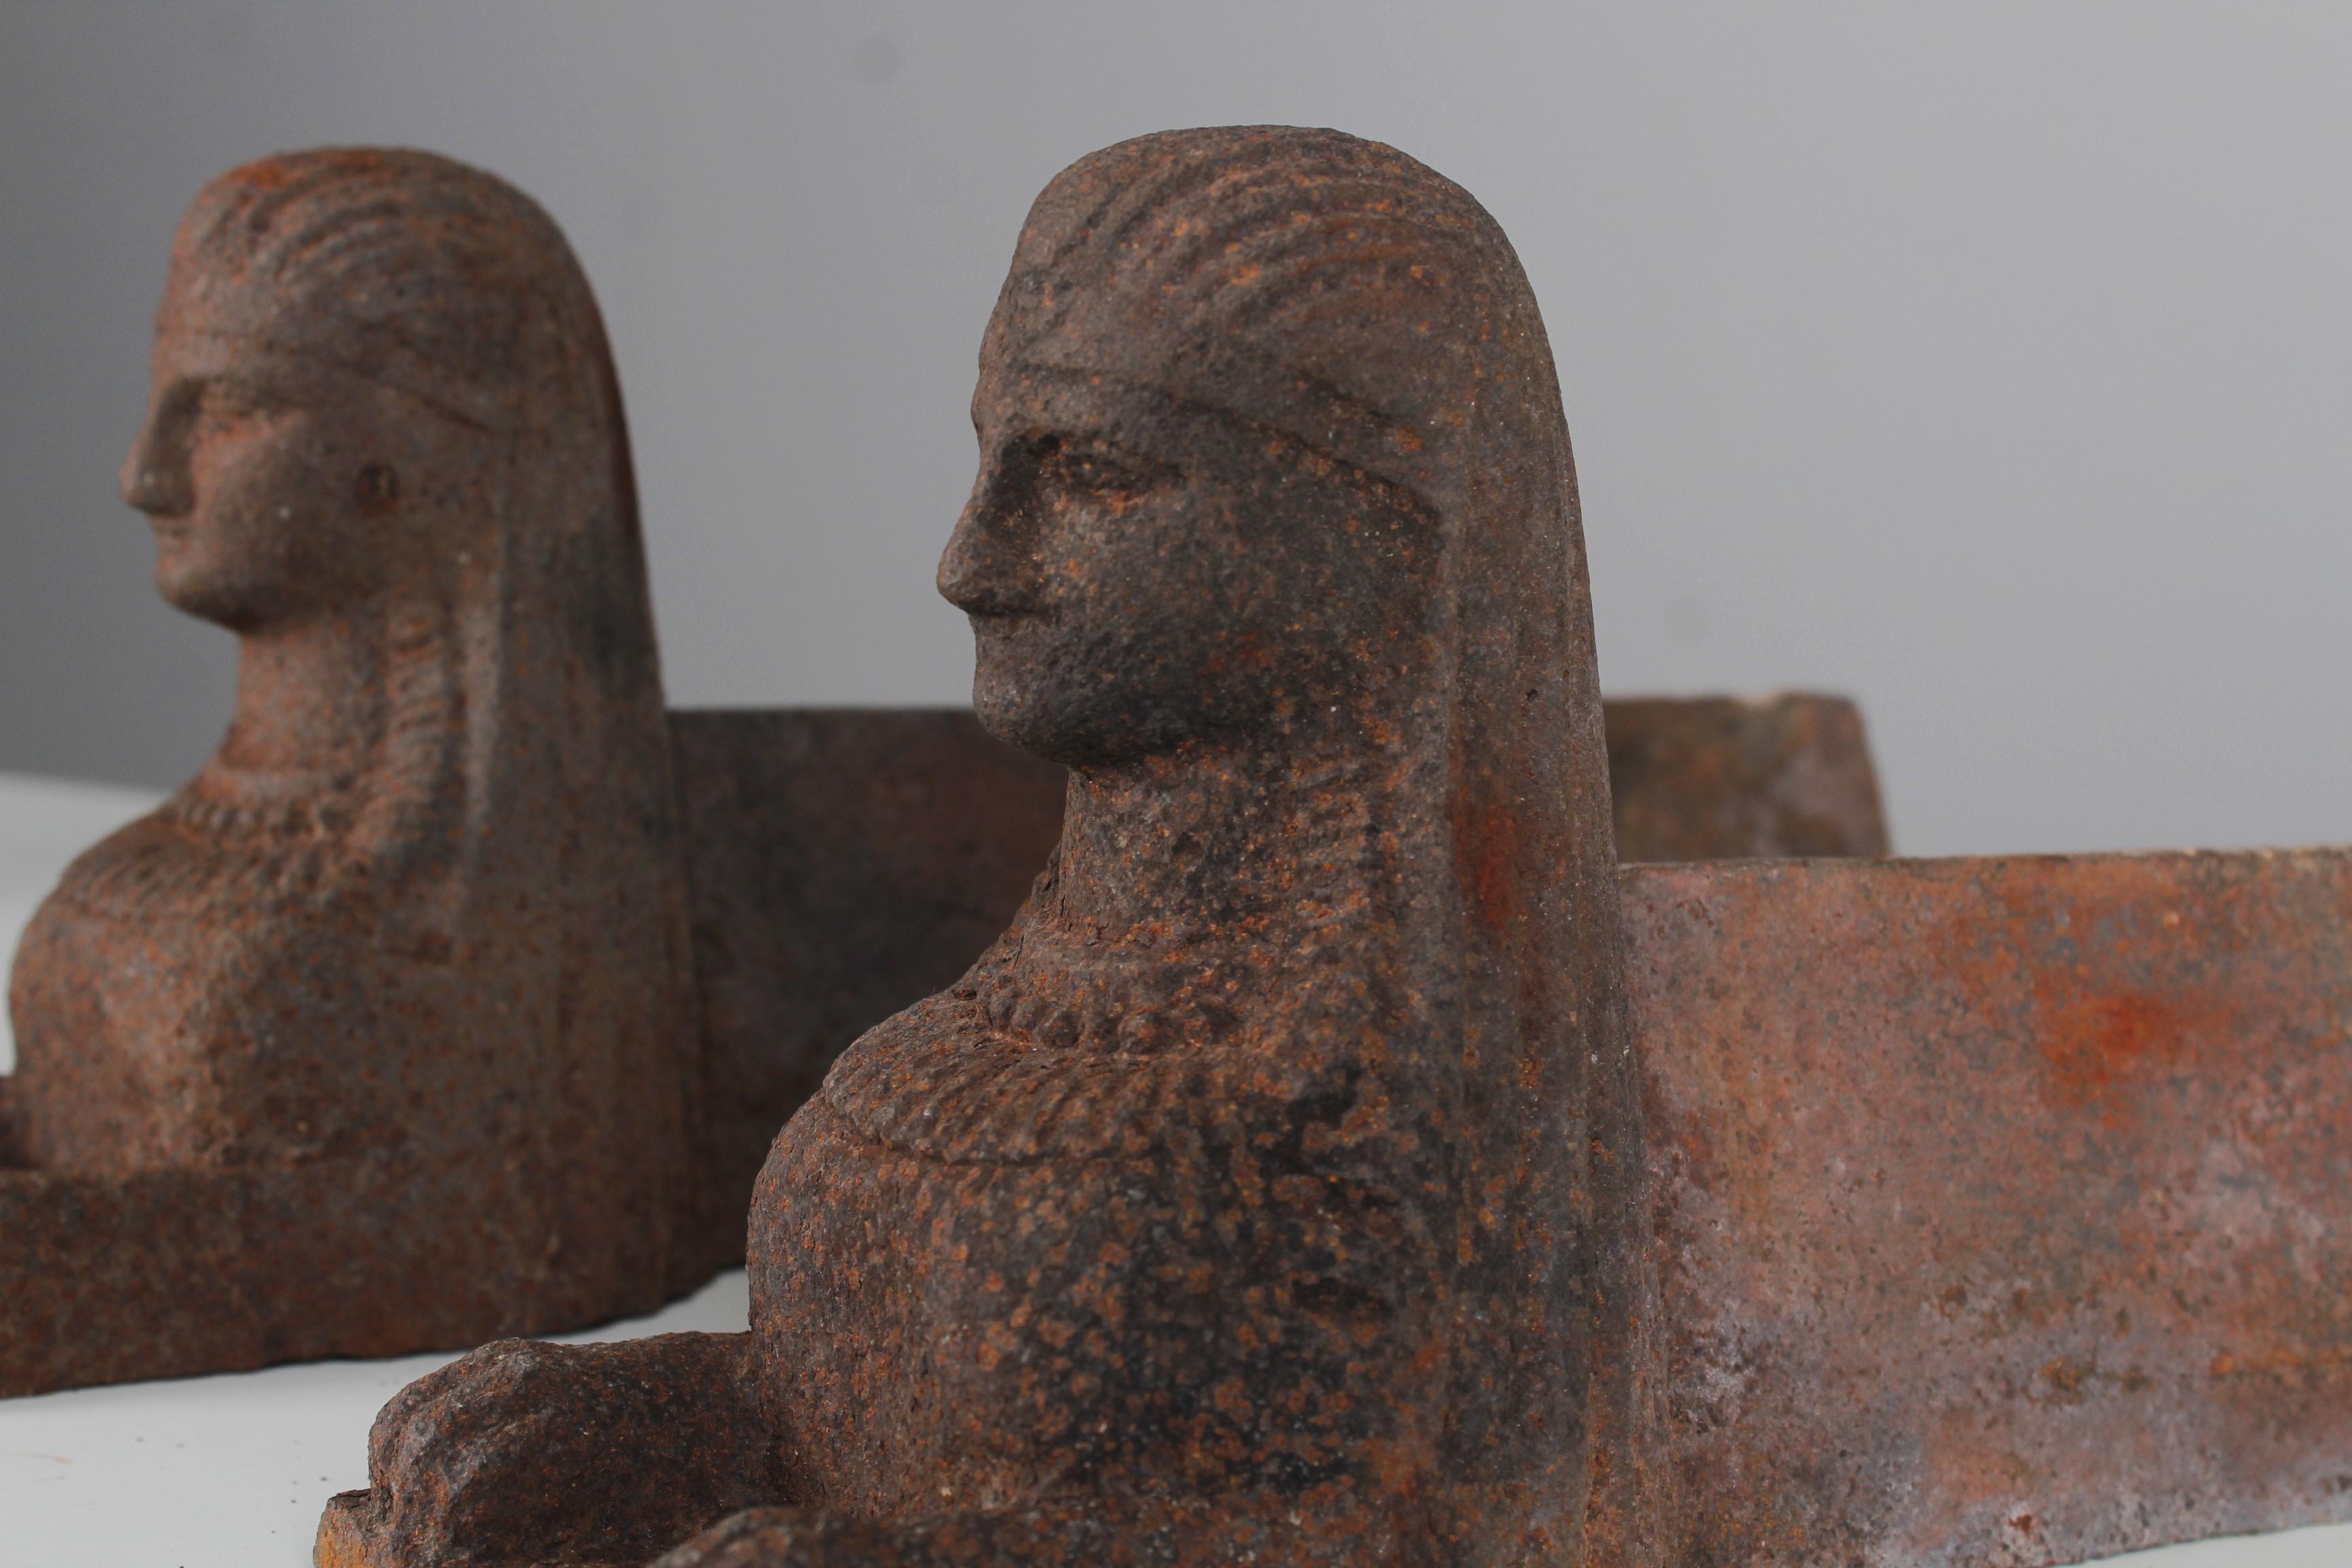 Ein Paar wunderbare Androns in Form einer Sphinx.
Frankreich, um 1860.
Solides Eisen in altersgemäß gutem Zustand.

Firedogs werden als Halter für Brennholz in einem Kamin verwendet. Sie sind auch als Feuerpferd, Andiron oder Schornsteinblock